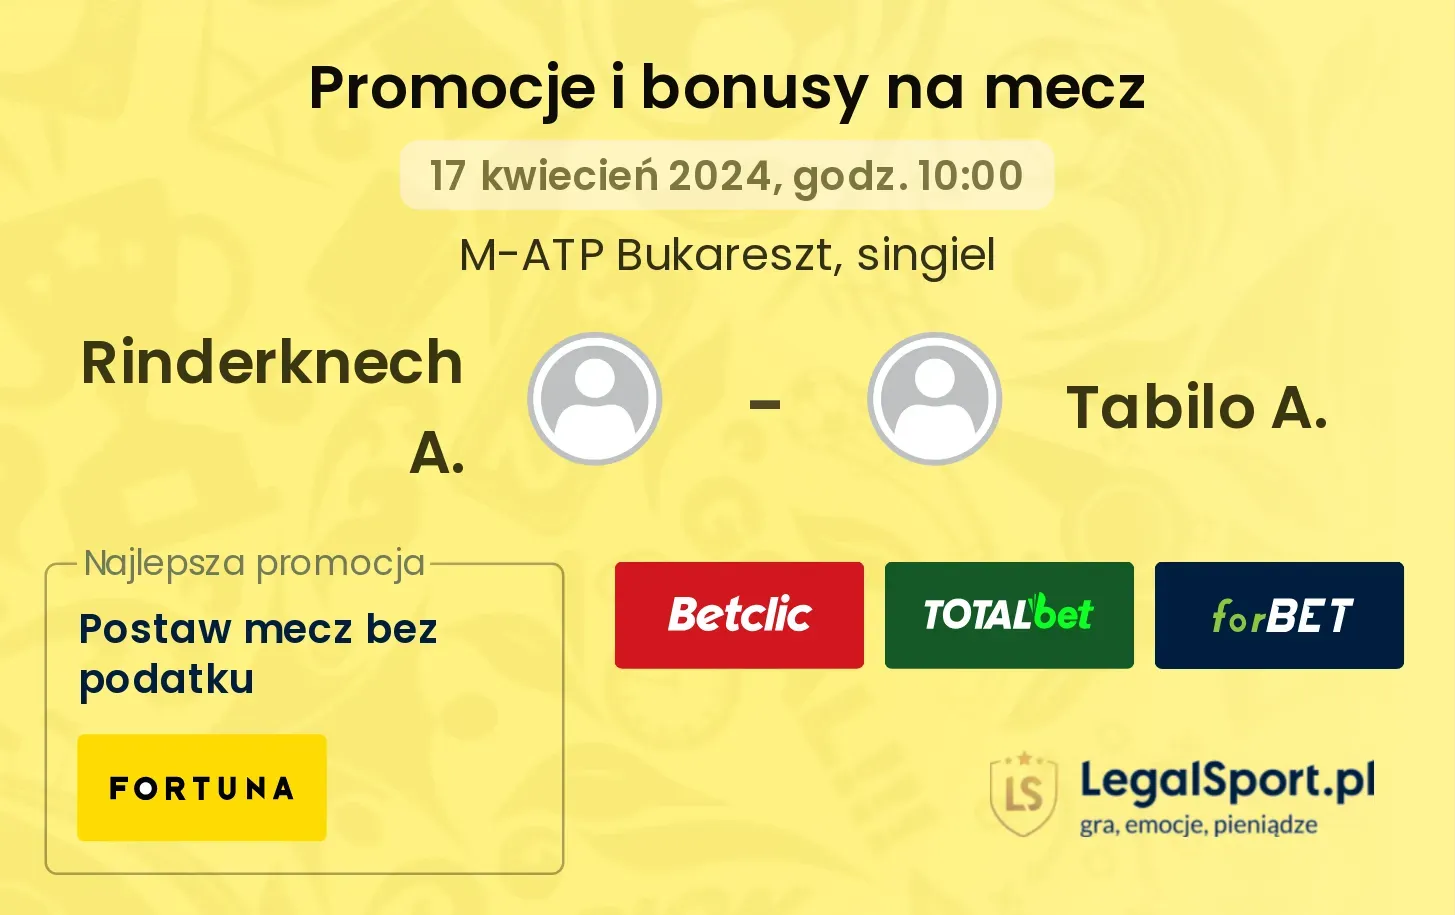 Rinderknech A. - Tabilo A. promocje bonusy na mecz